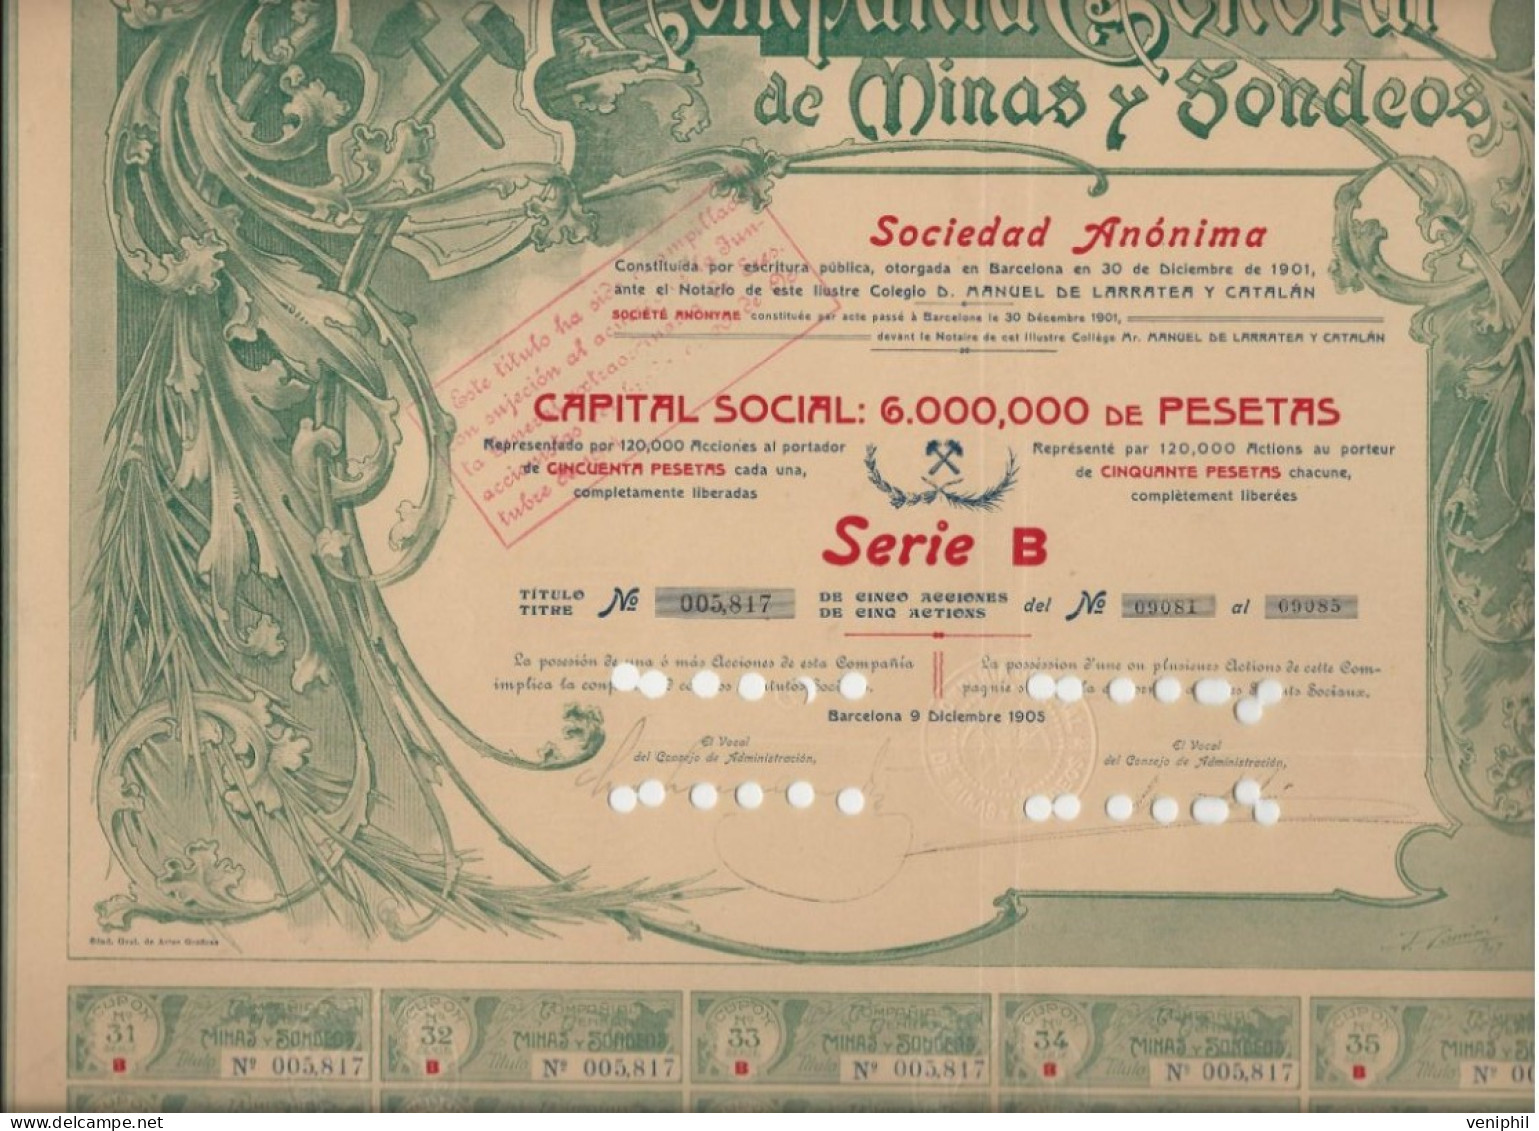 COMPAGNIE GENERAL DES MINES Y SODEOS - TITRE DE 5 ACTIONS DE 50 PSETAS -1905 BARCELONE - Mines